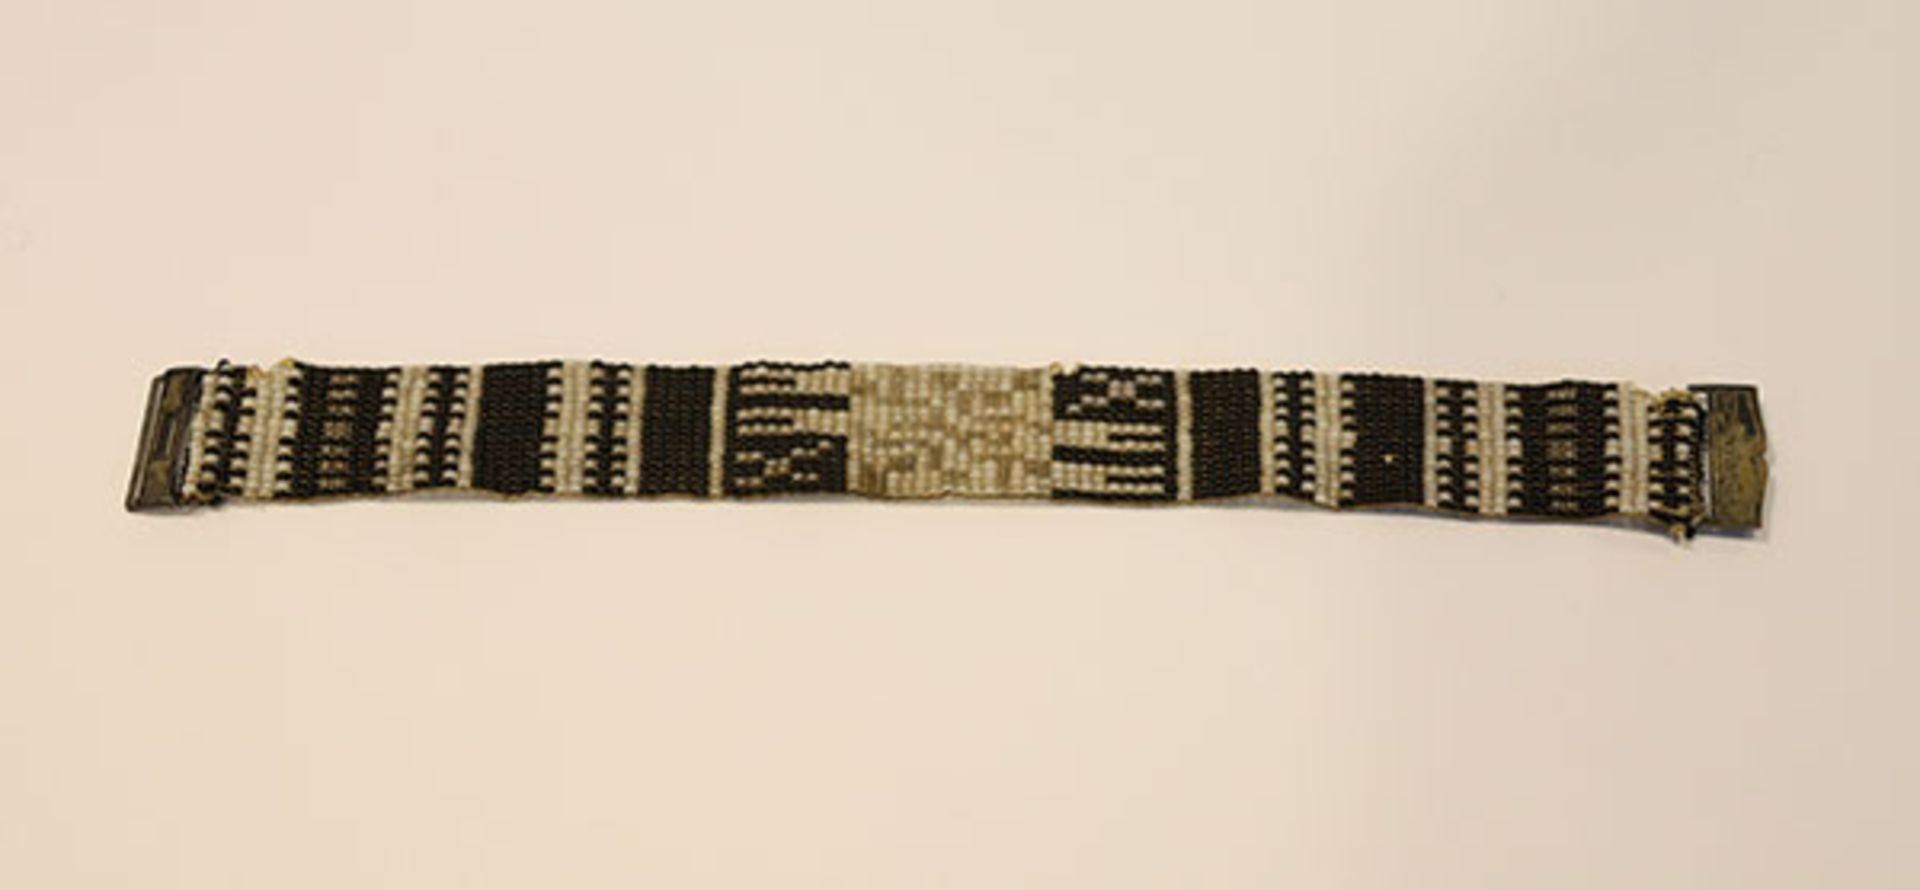 Feines Armband aus kleinen Glasperlchen mit Silberschließe, L 17,5 cm, interessante Handarbeit